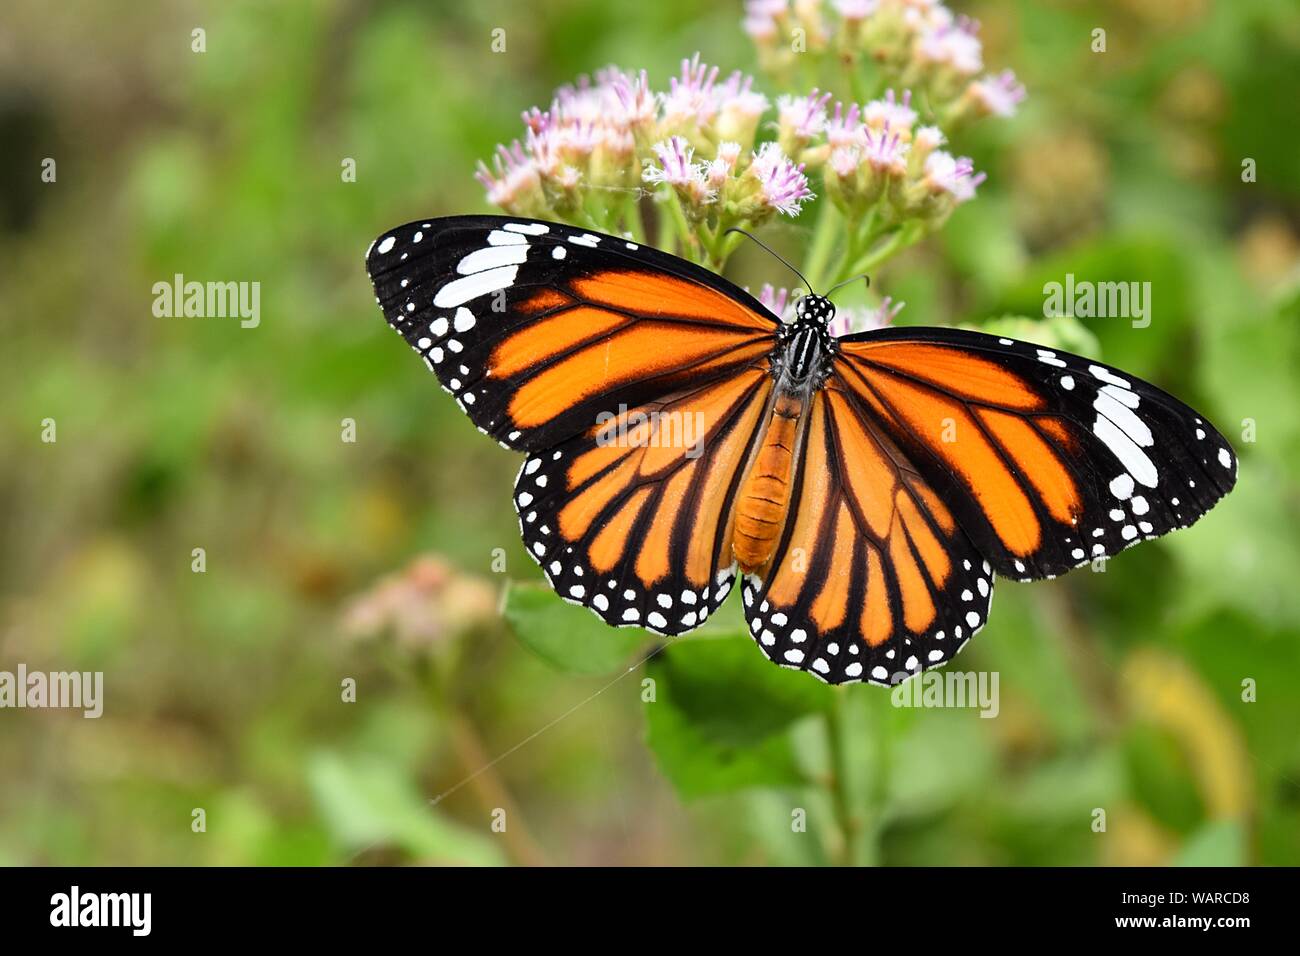 Orange mit weißer und schwarzer Farbe Muster auf Flügel der gemeinsamen Tiger Butterfly, Monarch butterfly auf der Suche nach Nektar von Blüte mit natürlichen, grünen Hintergrund Stockfoto